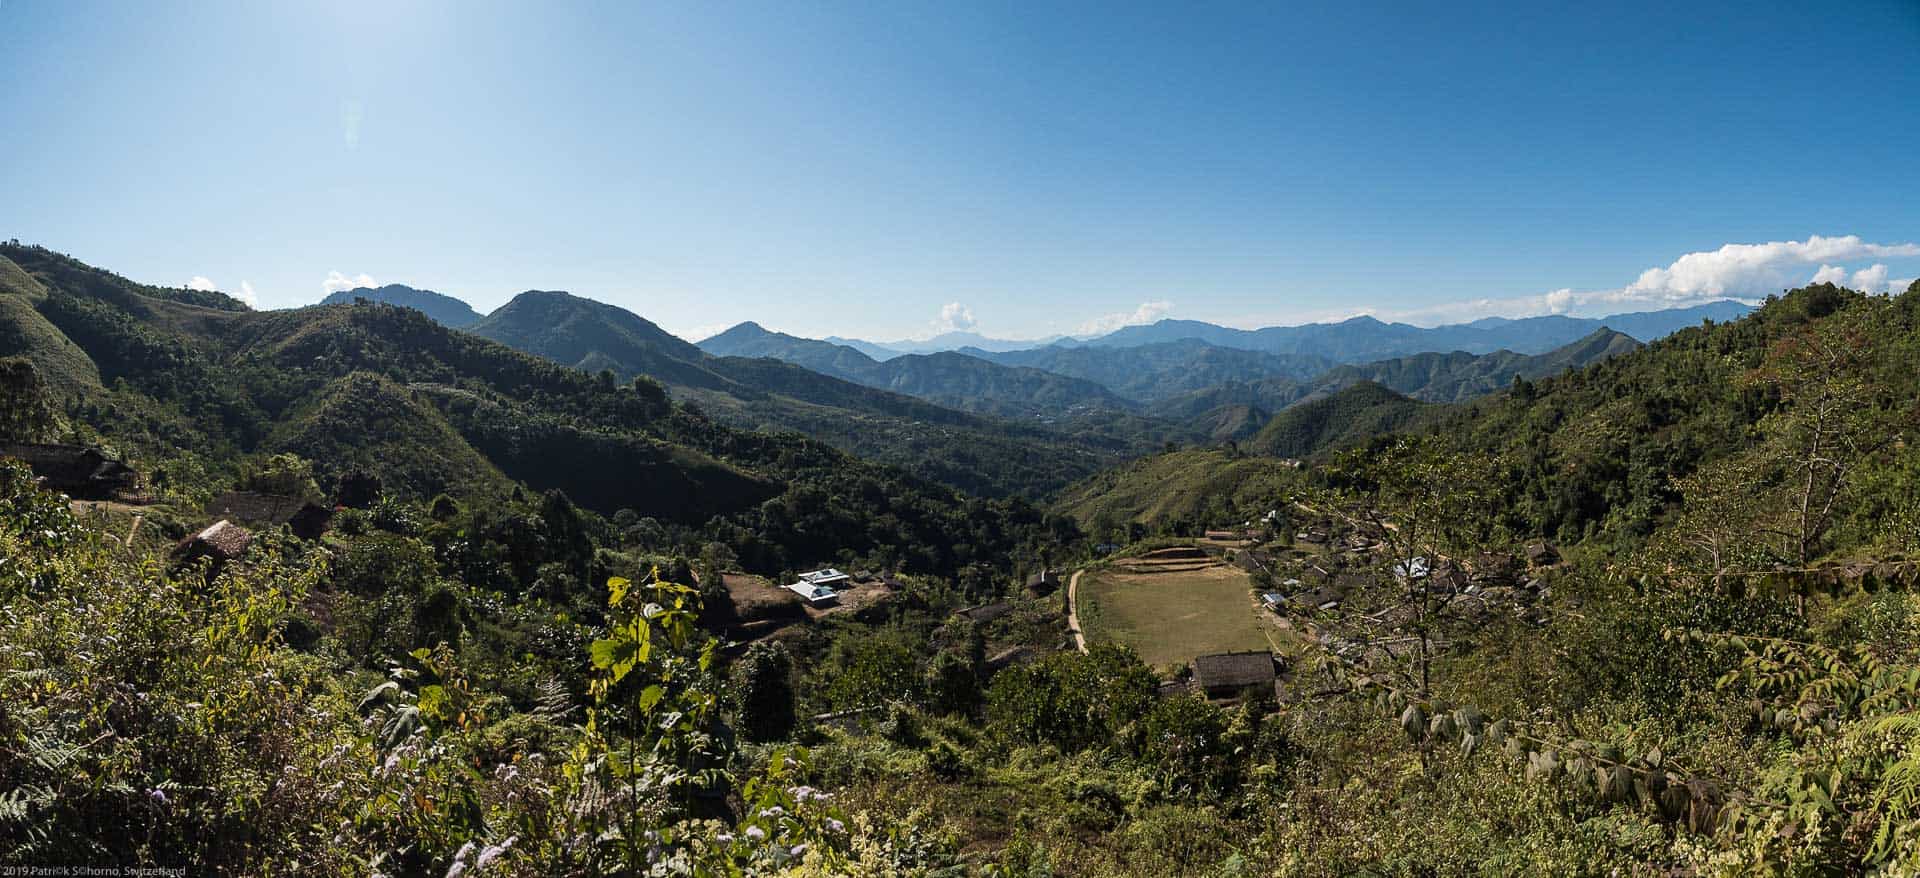 Bamboo Retreat Hotel - image "Reise in das Land des Sonnenaufgangs: Arunachal Pradesh, Indien" 155